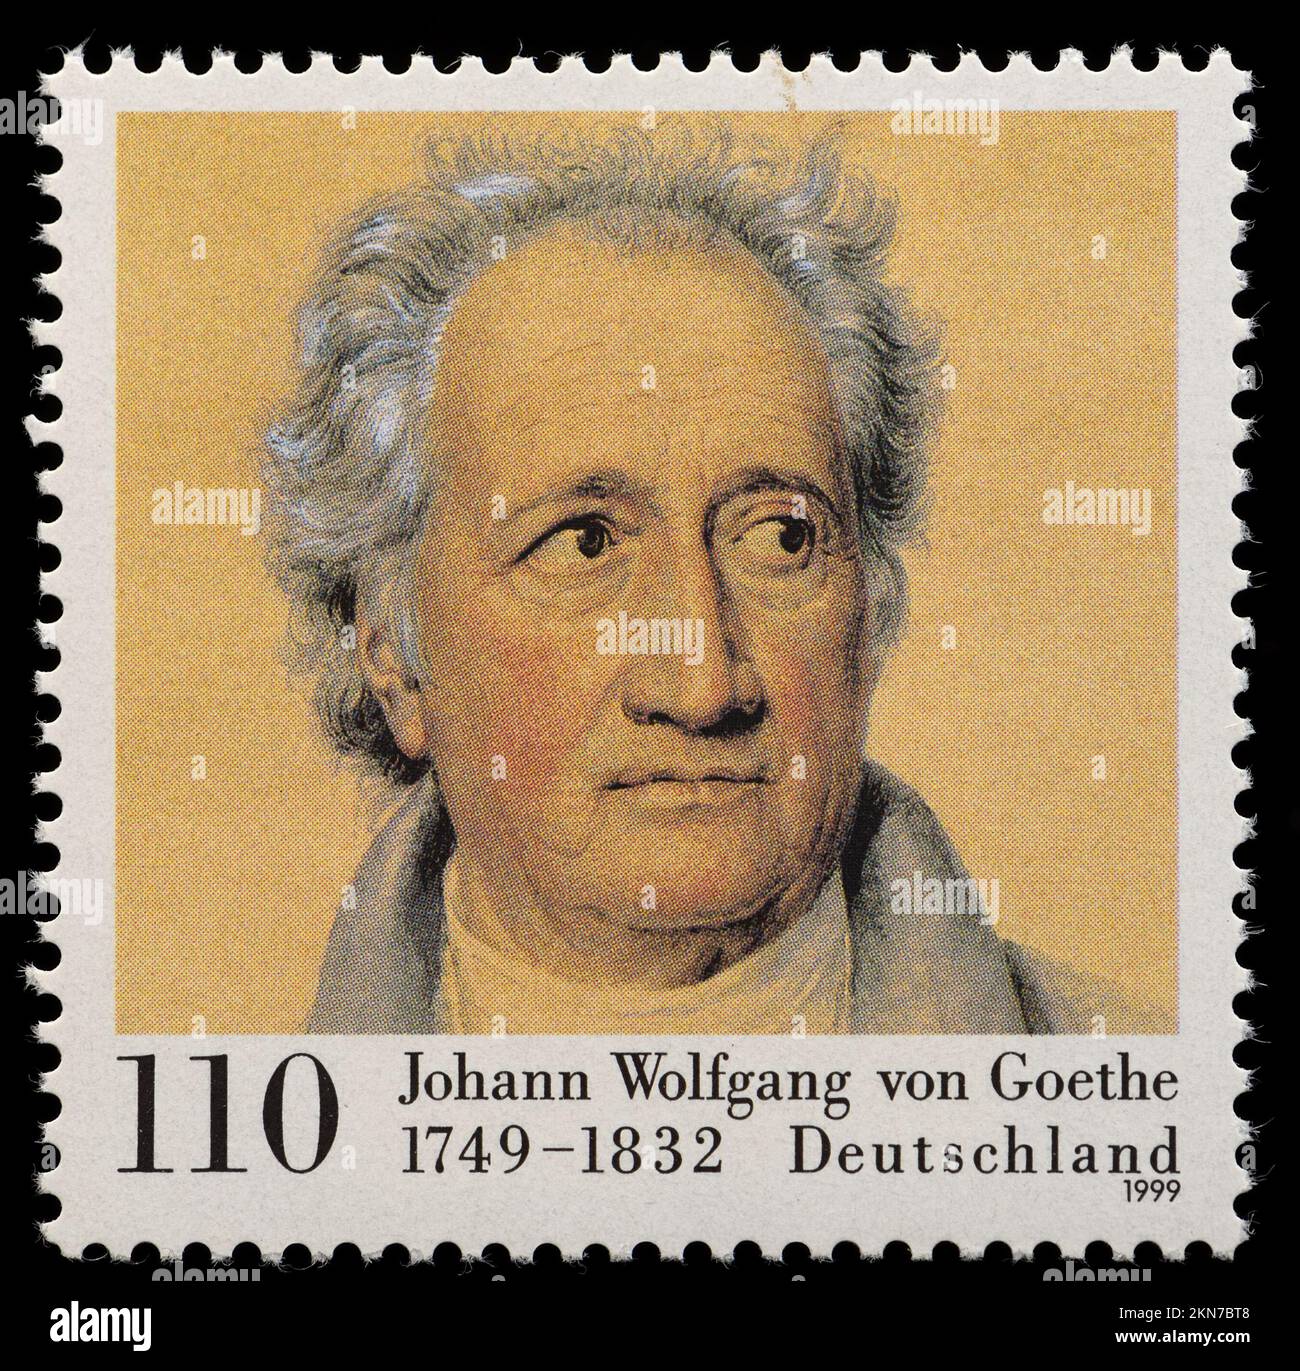 Deutsche Briefmarke (1999) : Johann Wolfgang von Goethe (1749-1832), Dichter und Dramatiker, zum 250.. Geburtstag. Porträt von Joseph Stieler Stockfoto